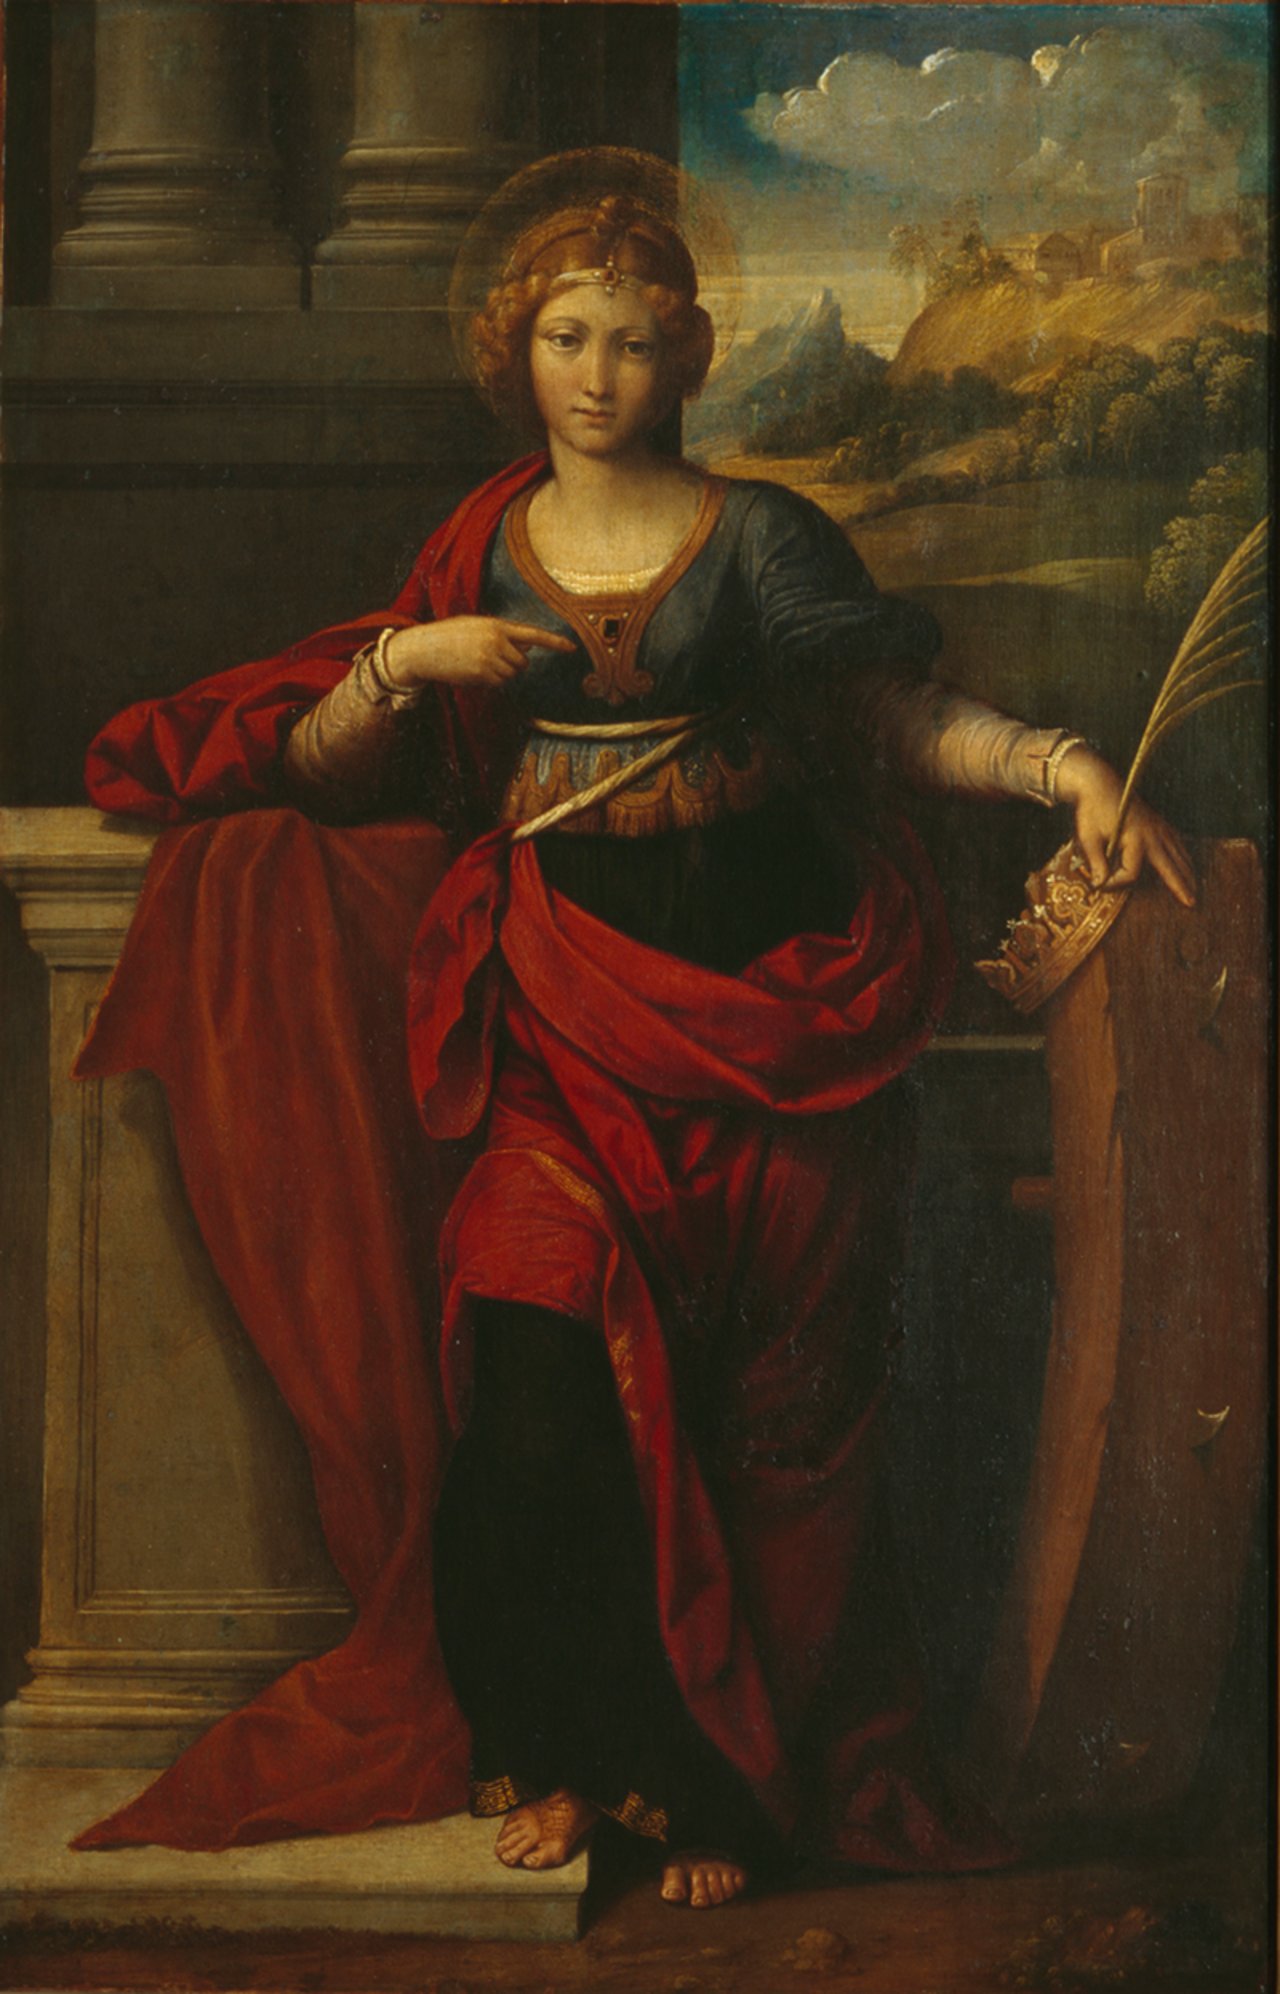 Benvenuto Tisi (genannt Garofalo), Die Heilige Katharina von Alexandria, 1529, Gemälde, Öl auf Leinwand